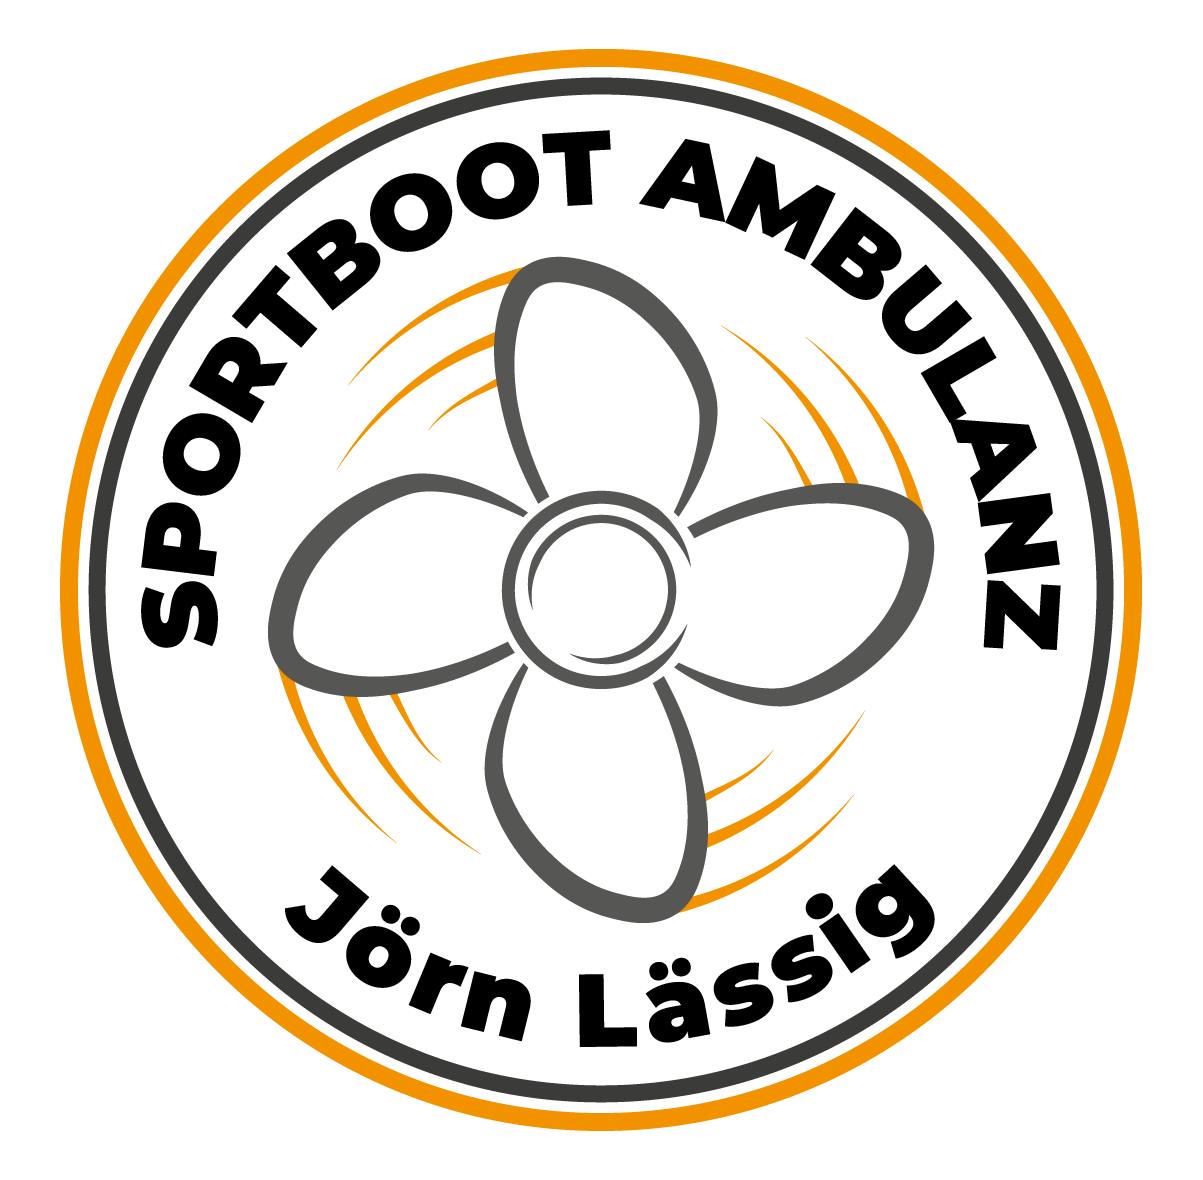 Company logo for 'Jörn Peter Lässig'.